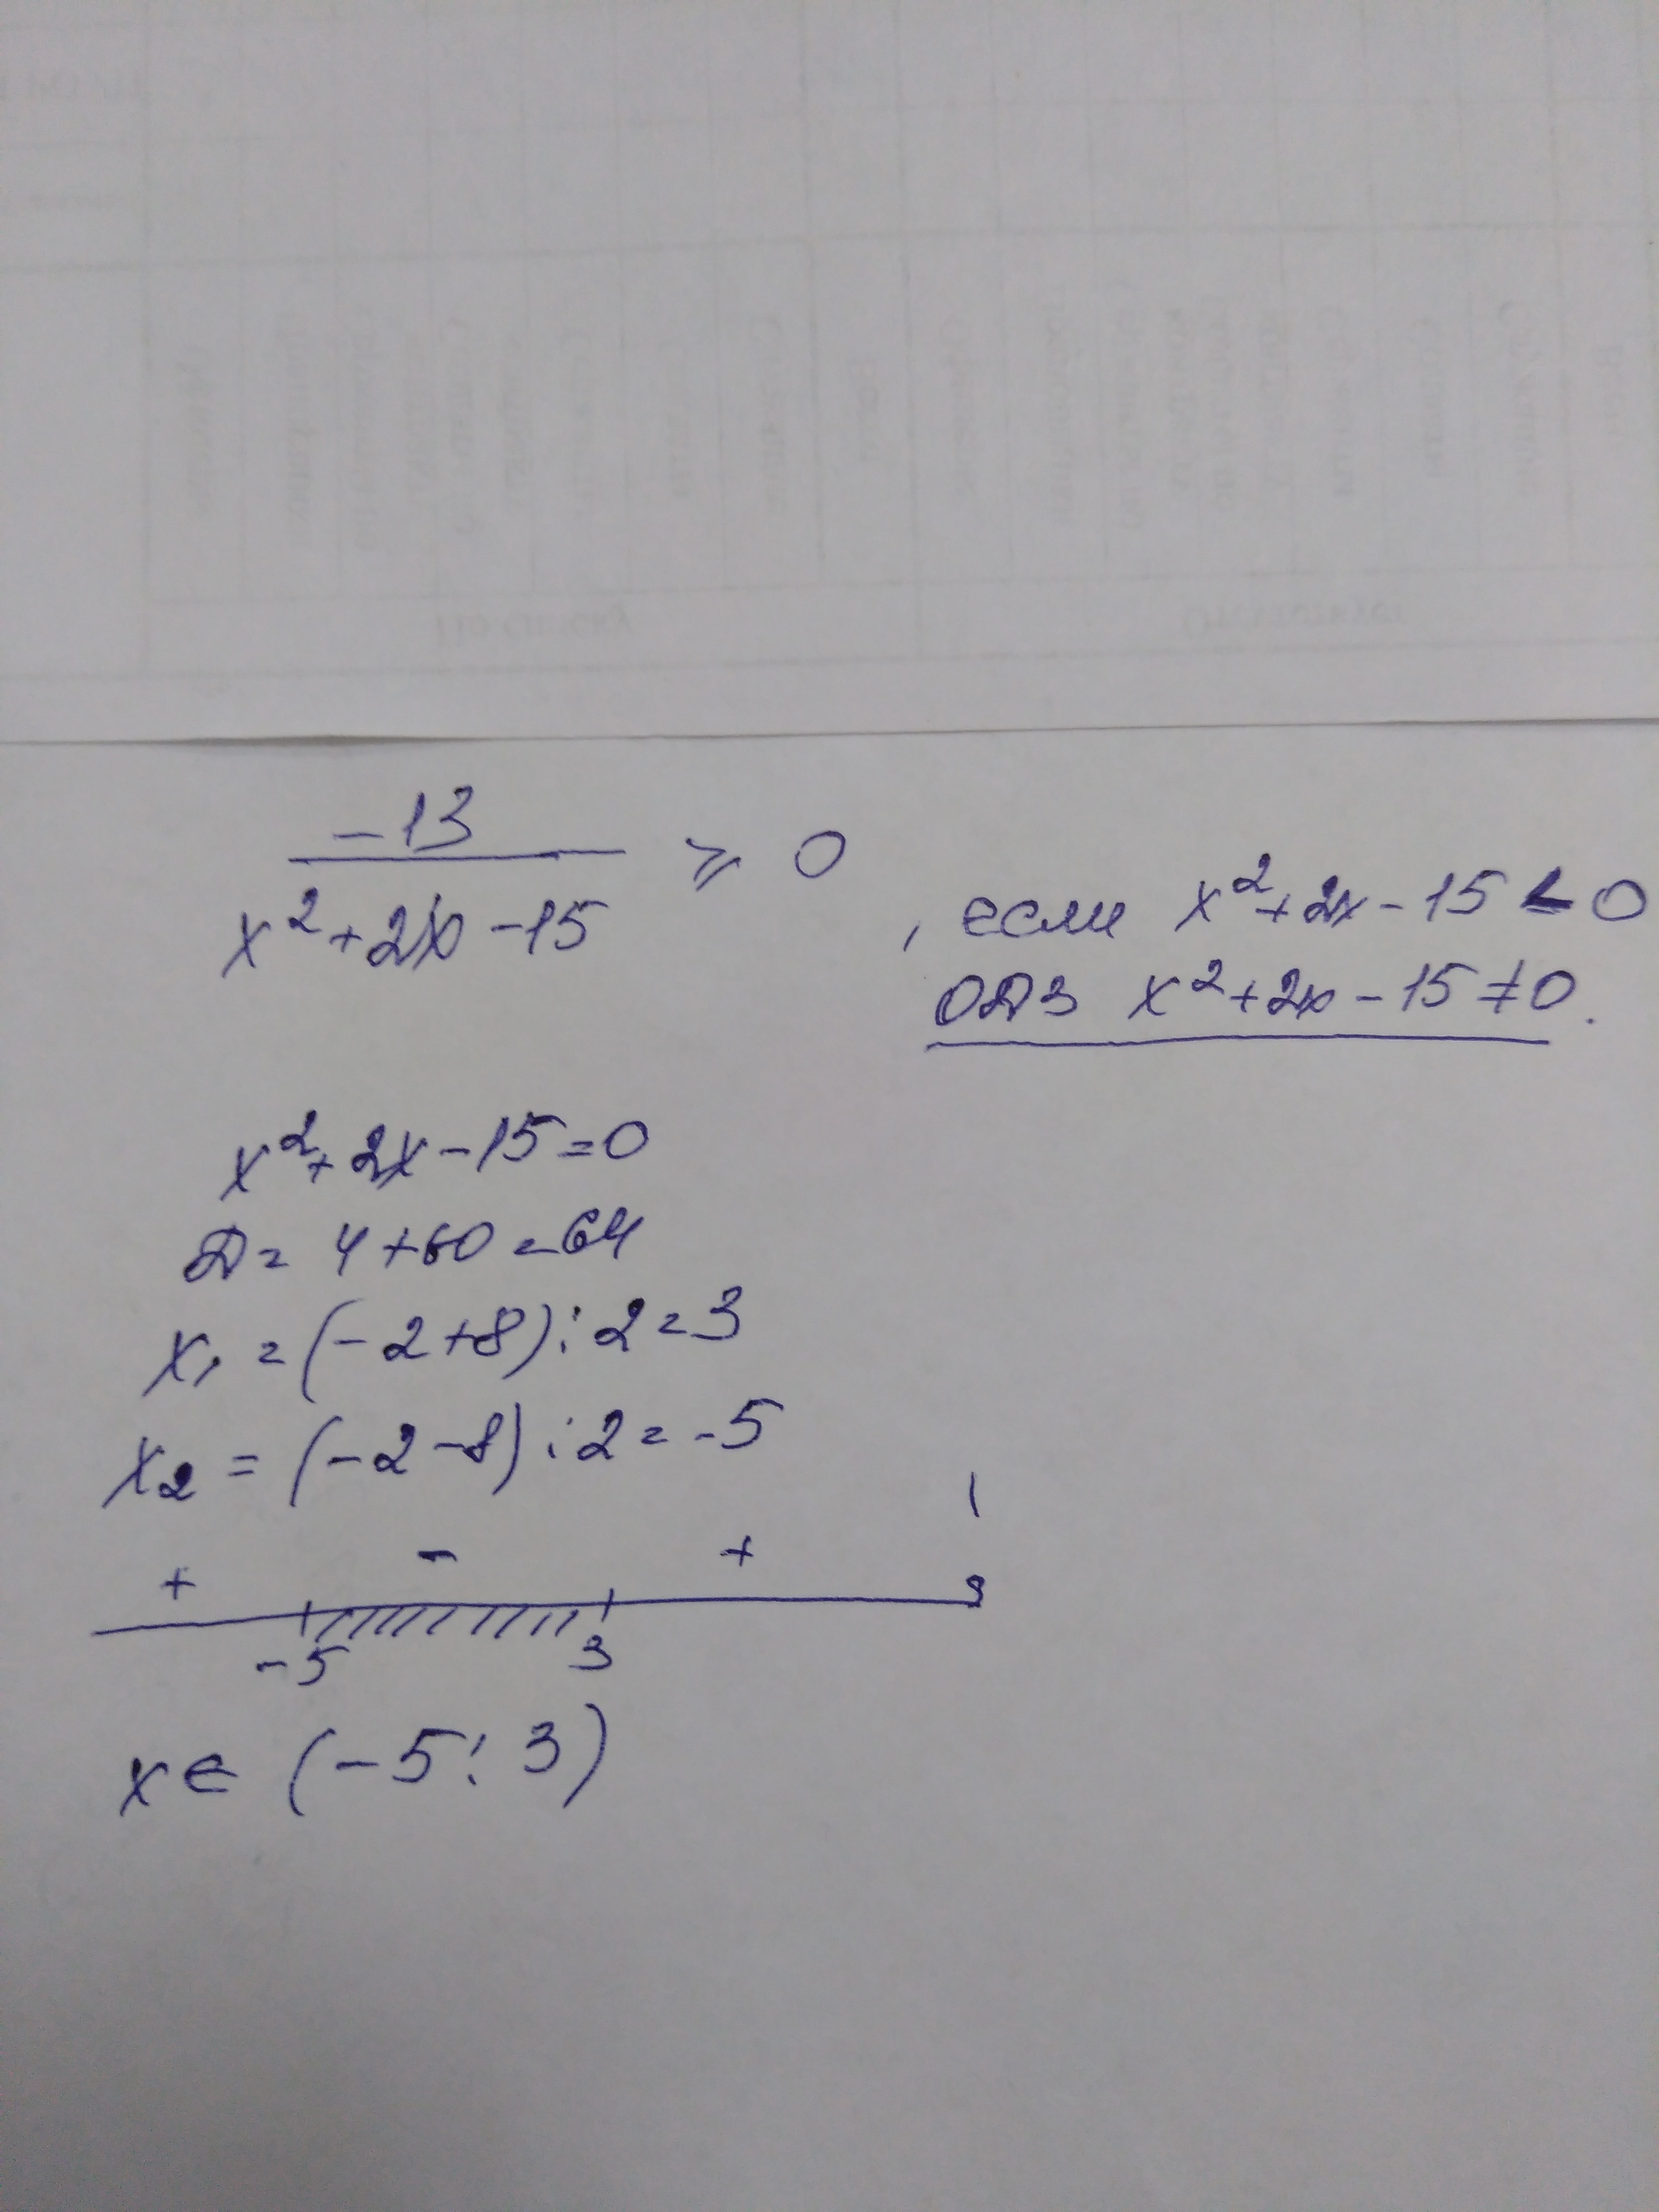 Реши неравенство x2 15x 0. X2-2x-15=0. -12/X2-2x-15. -12/X2-2x-15>0. Решите неравенство -x2+2x+15 0.